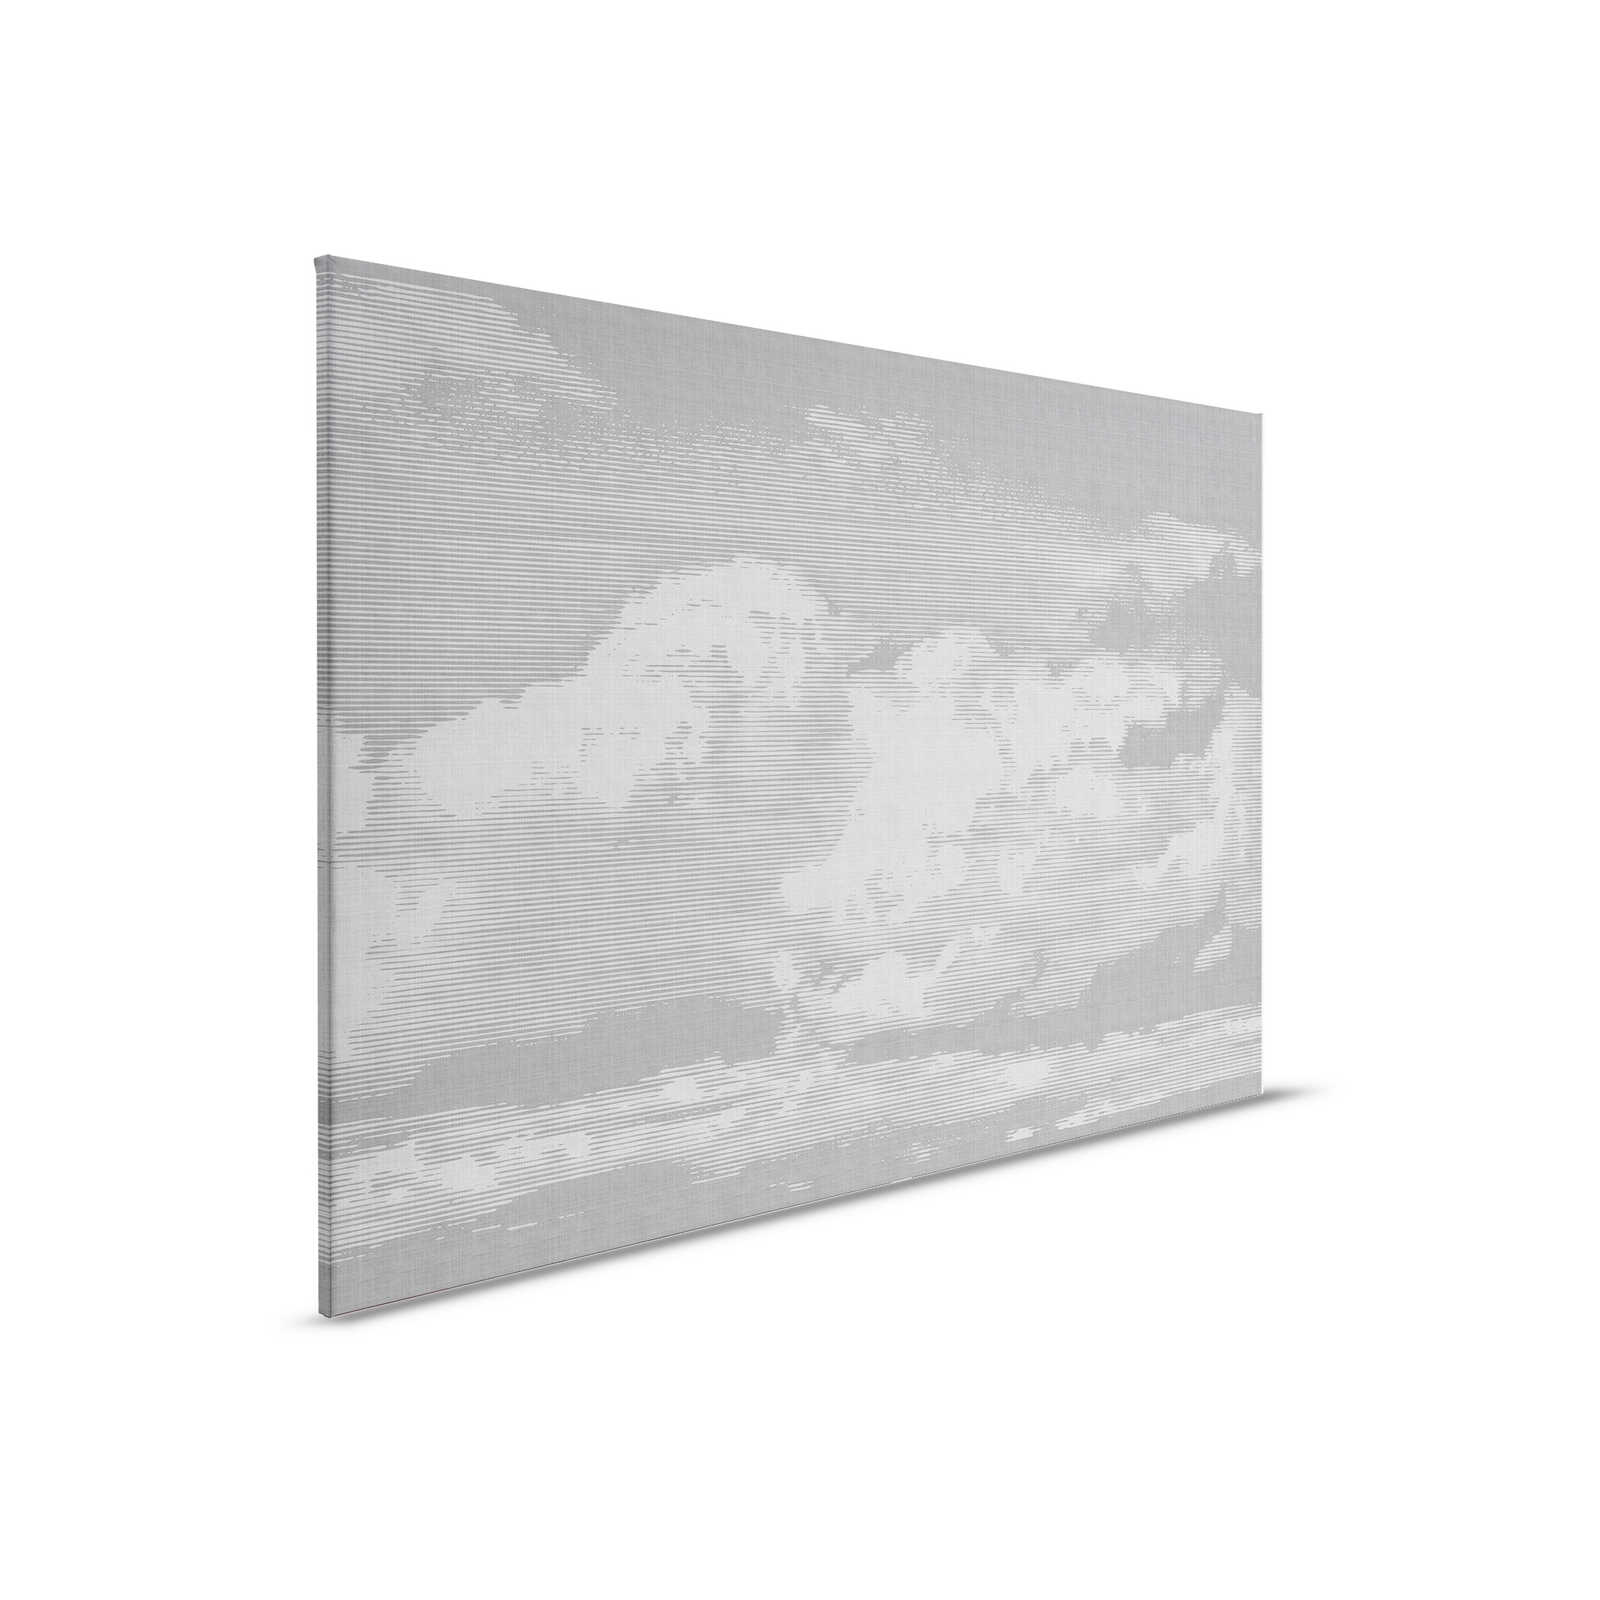 Clouds 2 - Hemels linnen doek met wolkenmotief - 0.90 m x 0.60 m
